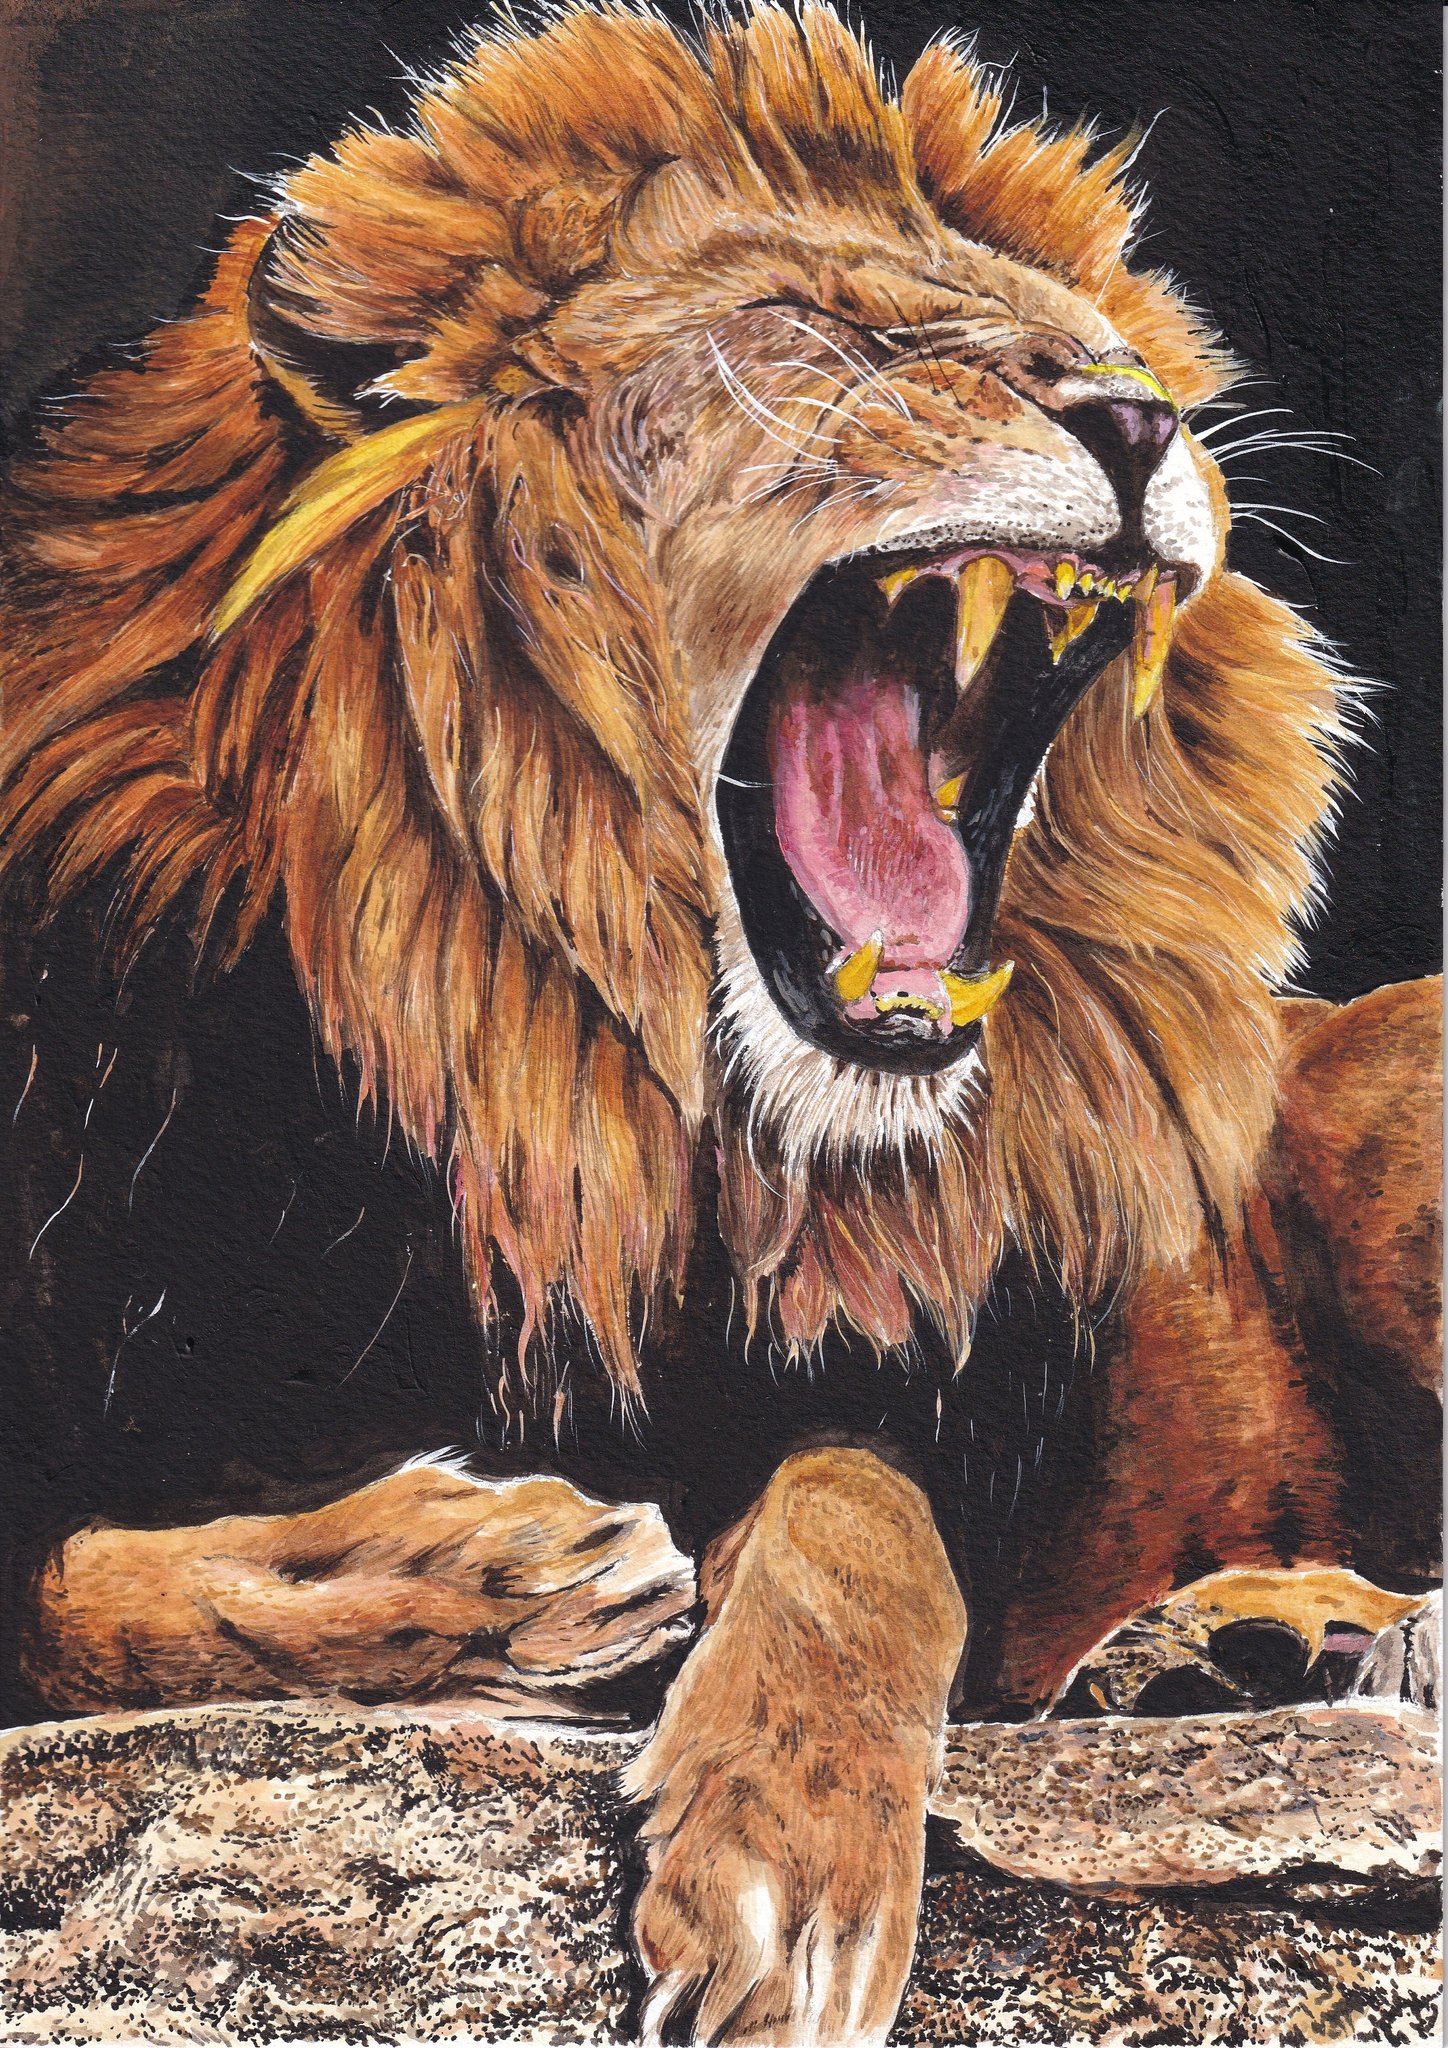 تويتر ケン على تويتر アクリル絵の具でライオンを描きました Acrylic Painting Of The Lion アクリル画 アクリル絵の具 ライオン イラスト Acrylicpainting Acryliccolor Lion Illustration T Co Cyjxjtxavz